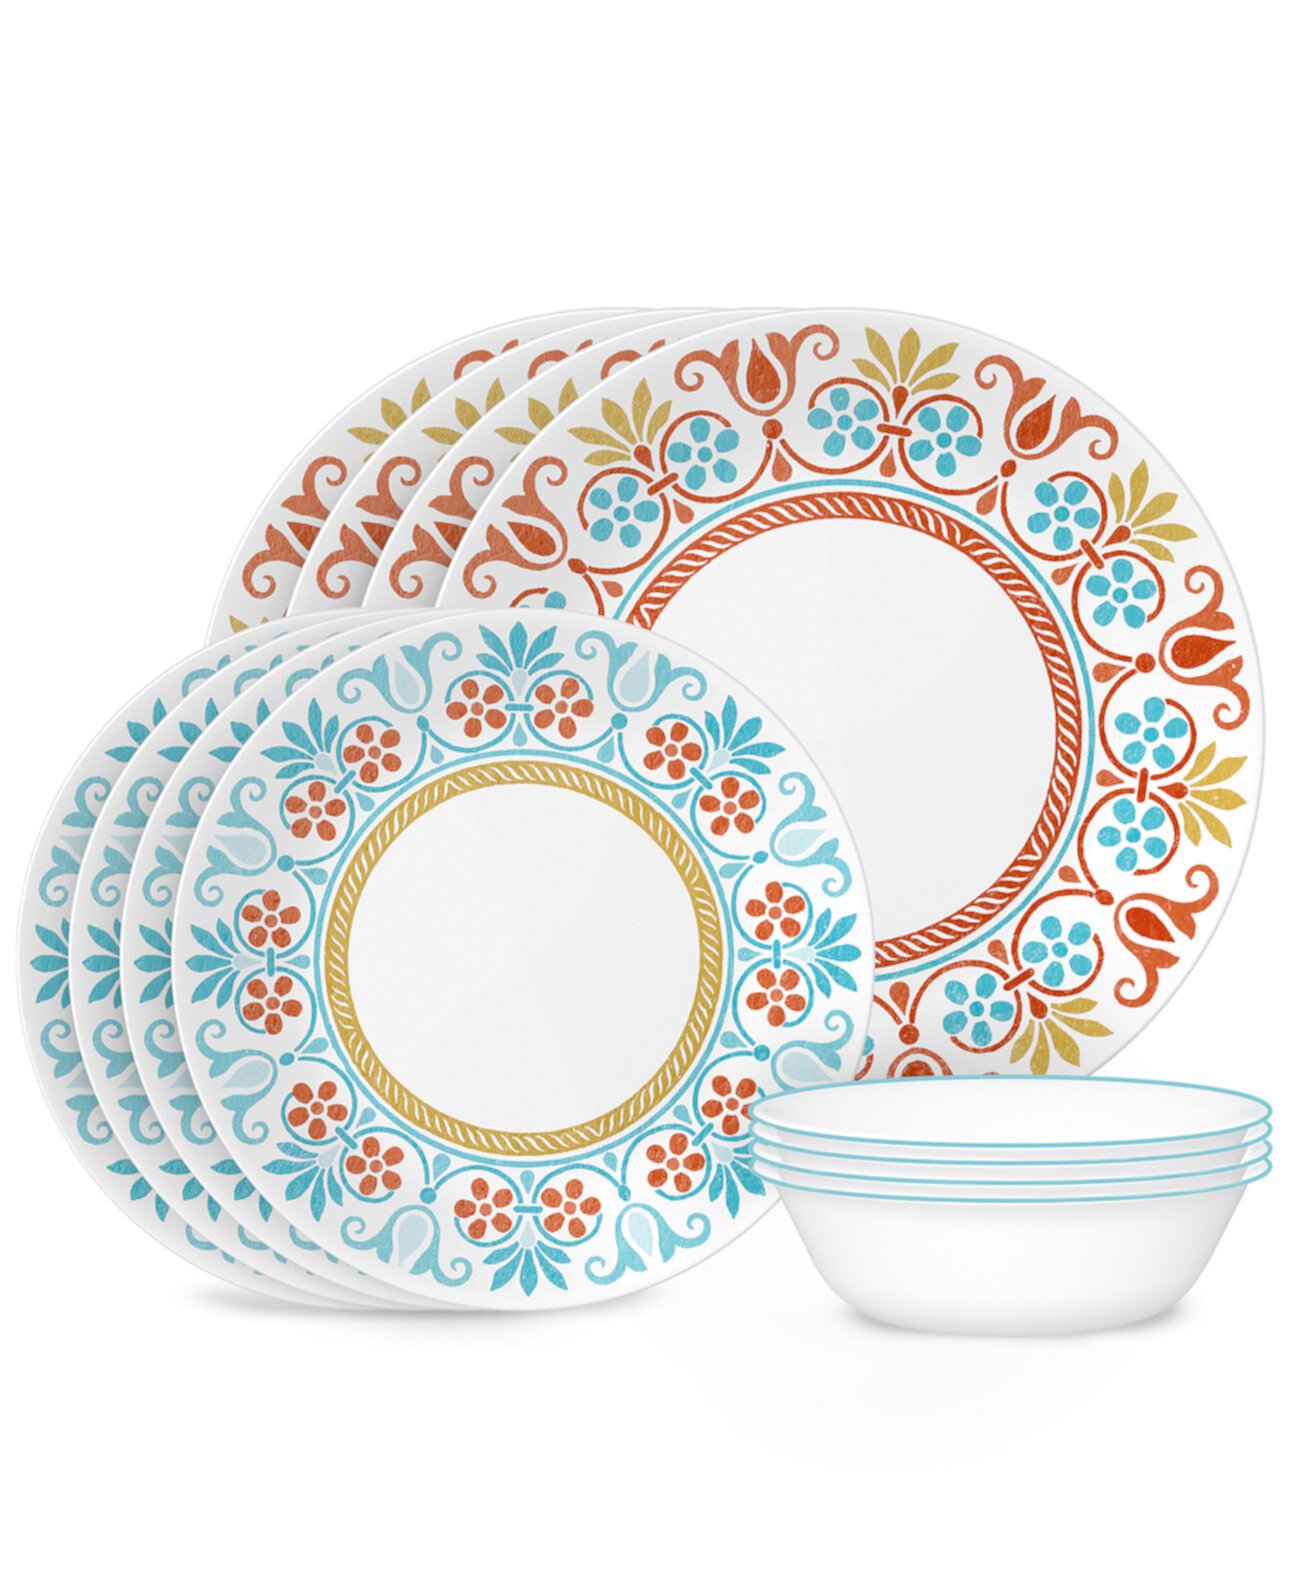 Global Collection, Terracotta Dreams, набор столовой посуды из 12 предметов, сервиз на 4 персоны Corelle